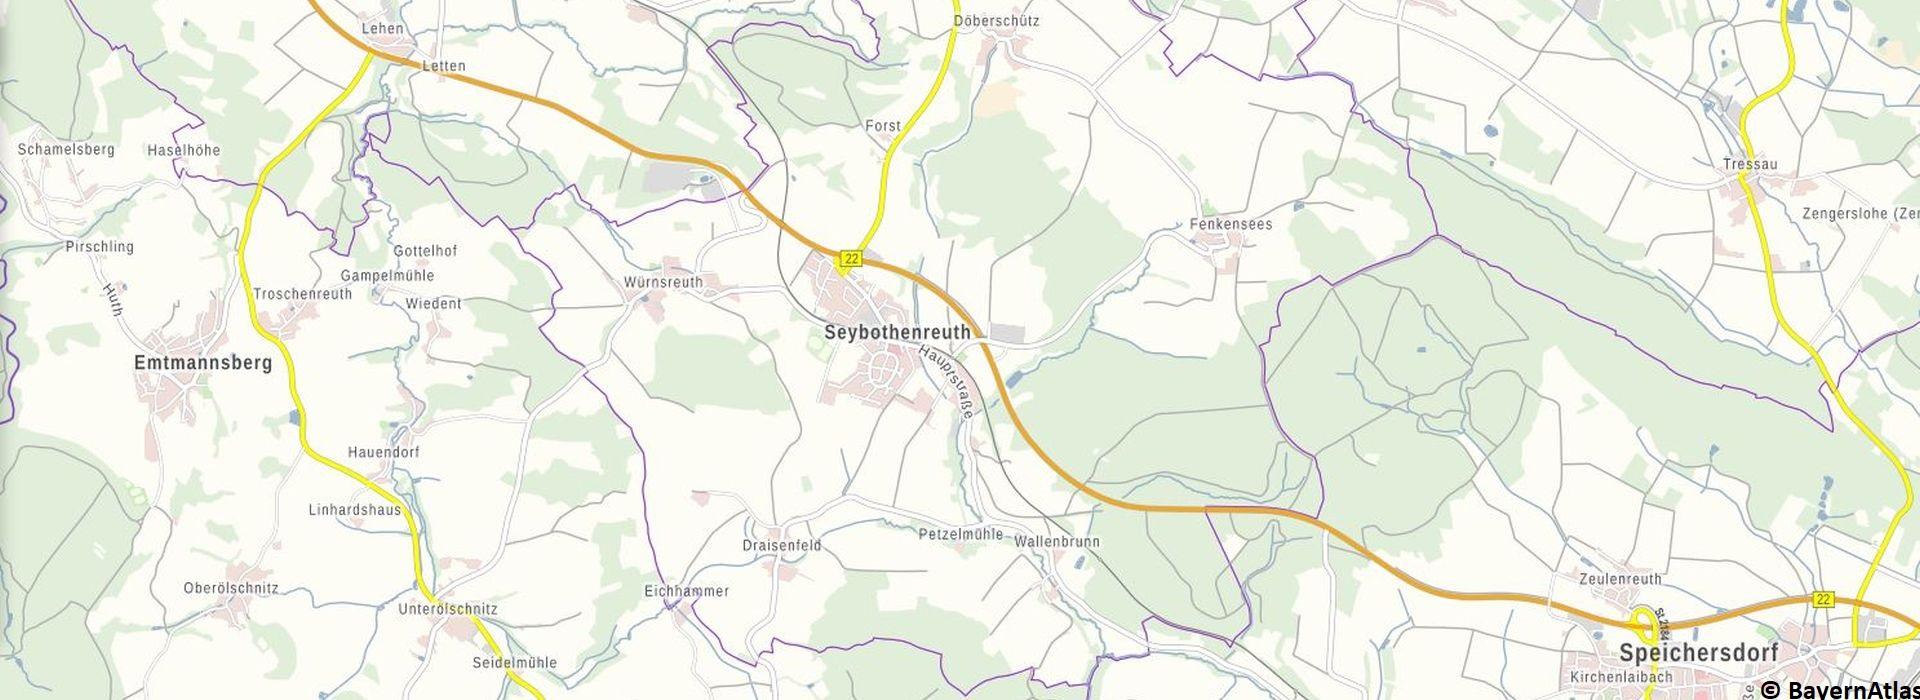 Gemeindekarte Seybothenreuth aus dem Bayern Atlas